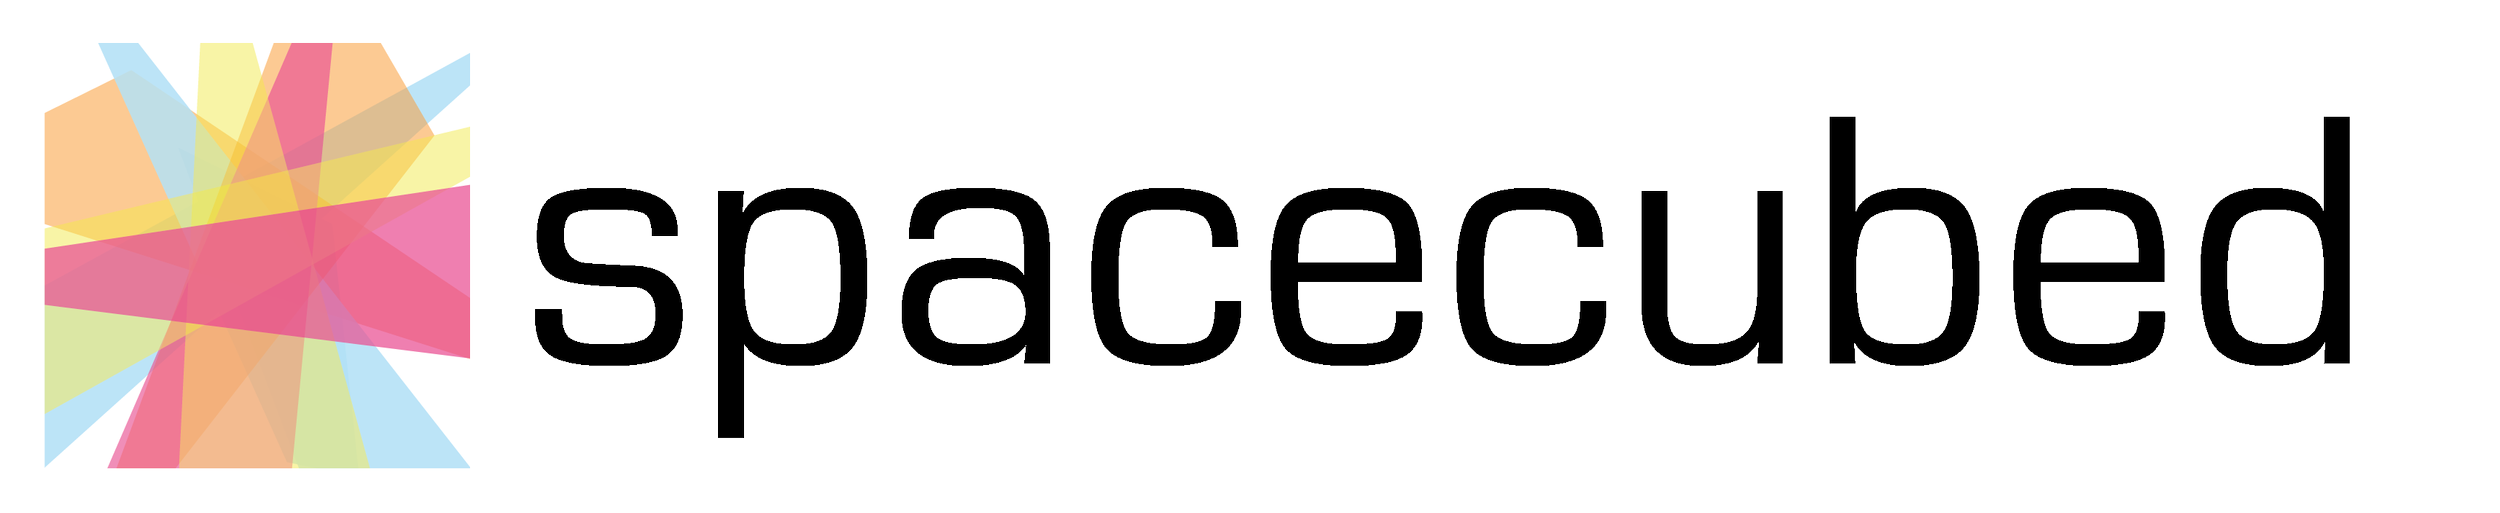 Spacecubed Logo.png